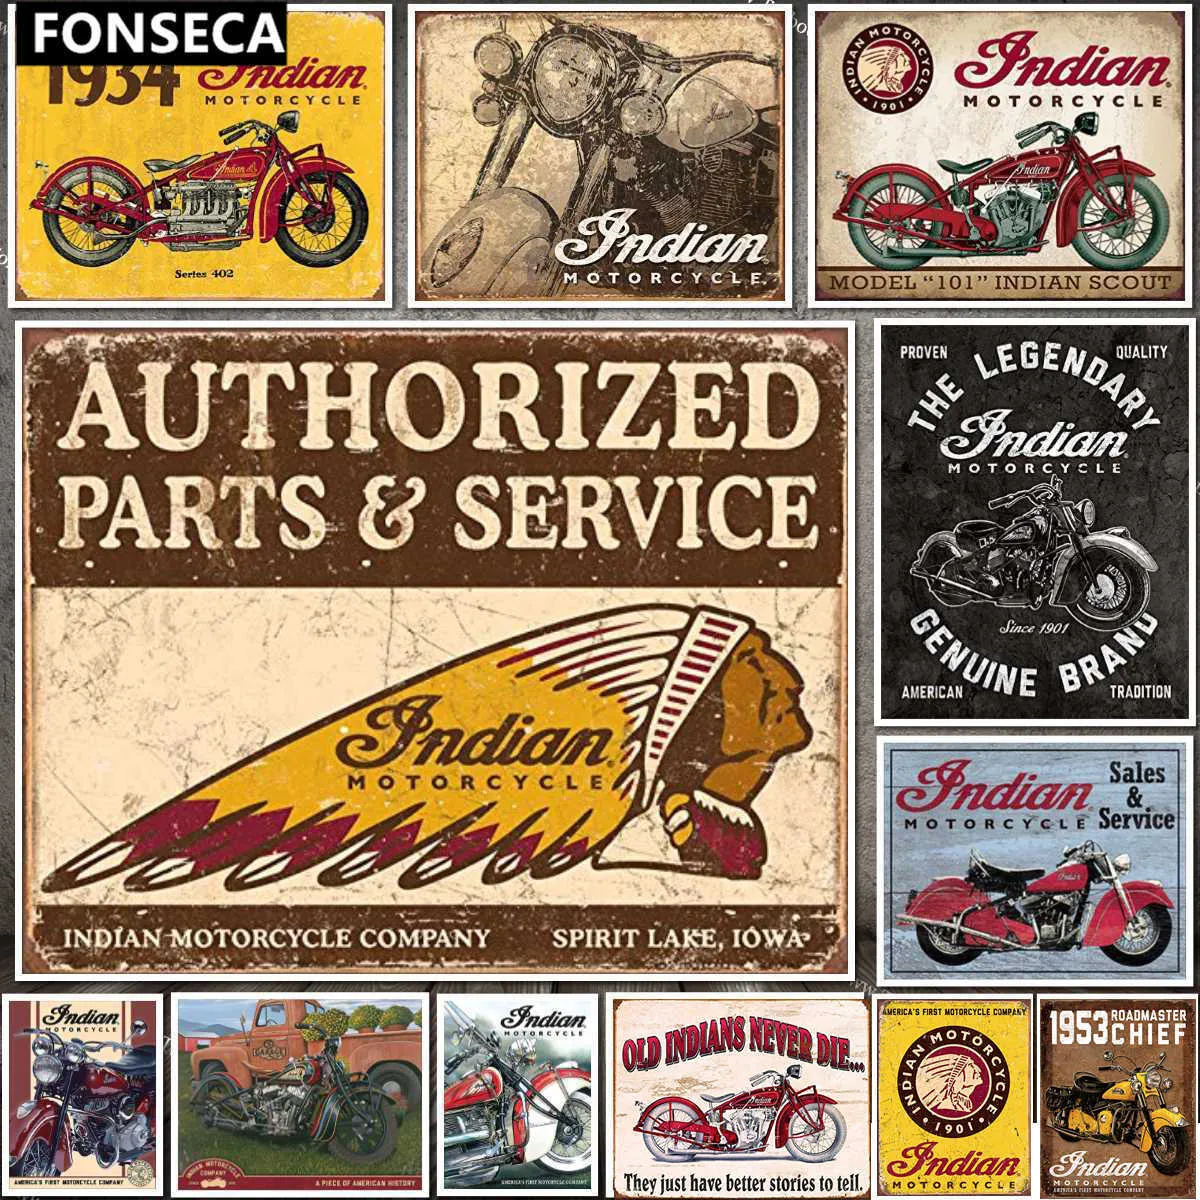 Signe traditionnel de Motor d'étain indien classique Vintage Motorcycle Club Garage Art Decor Iron Plateaux Pouteaux Bar Cafe Metal Plaques6658688